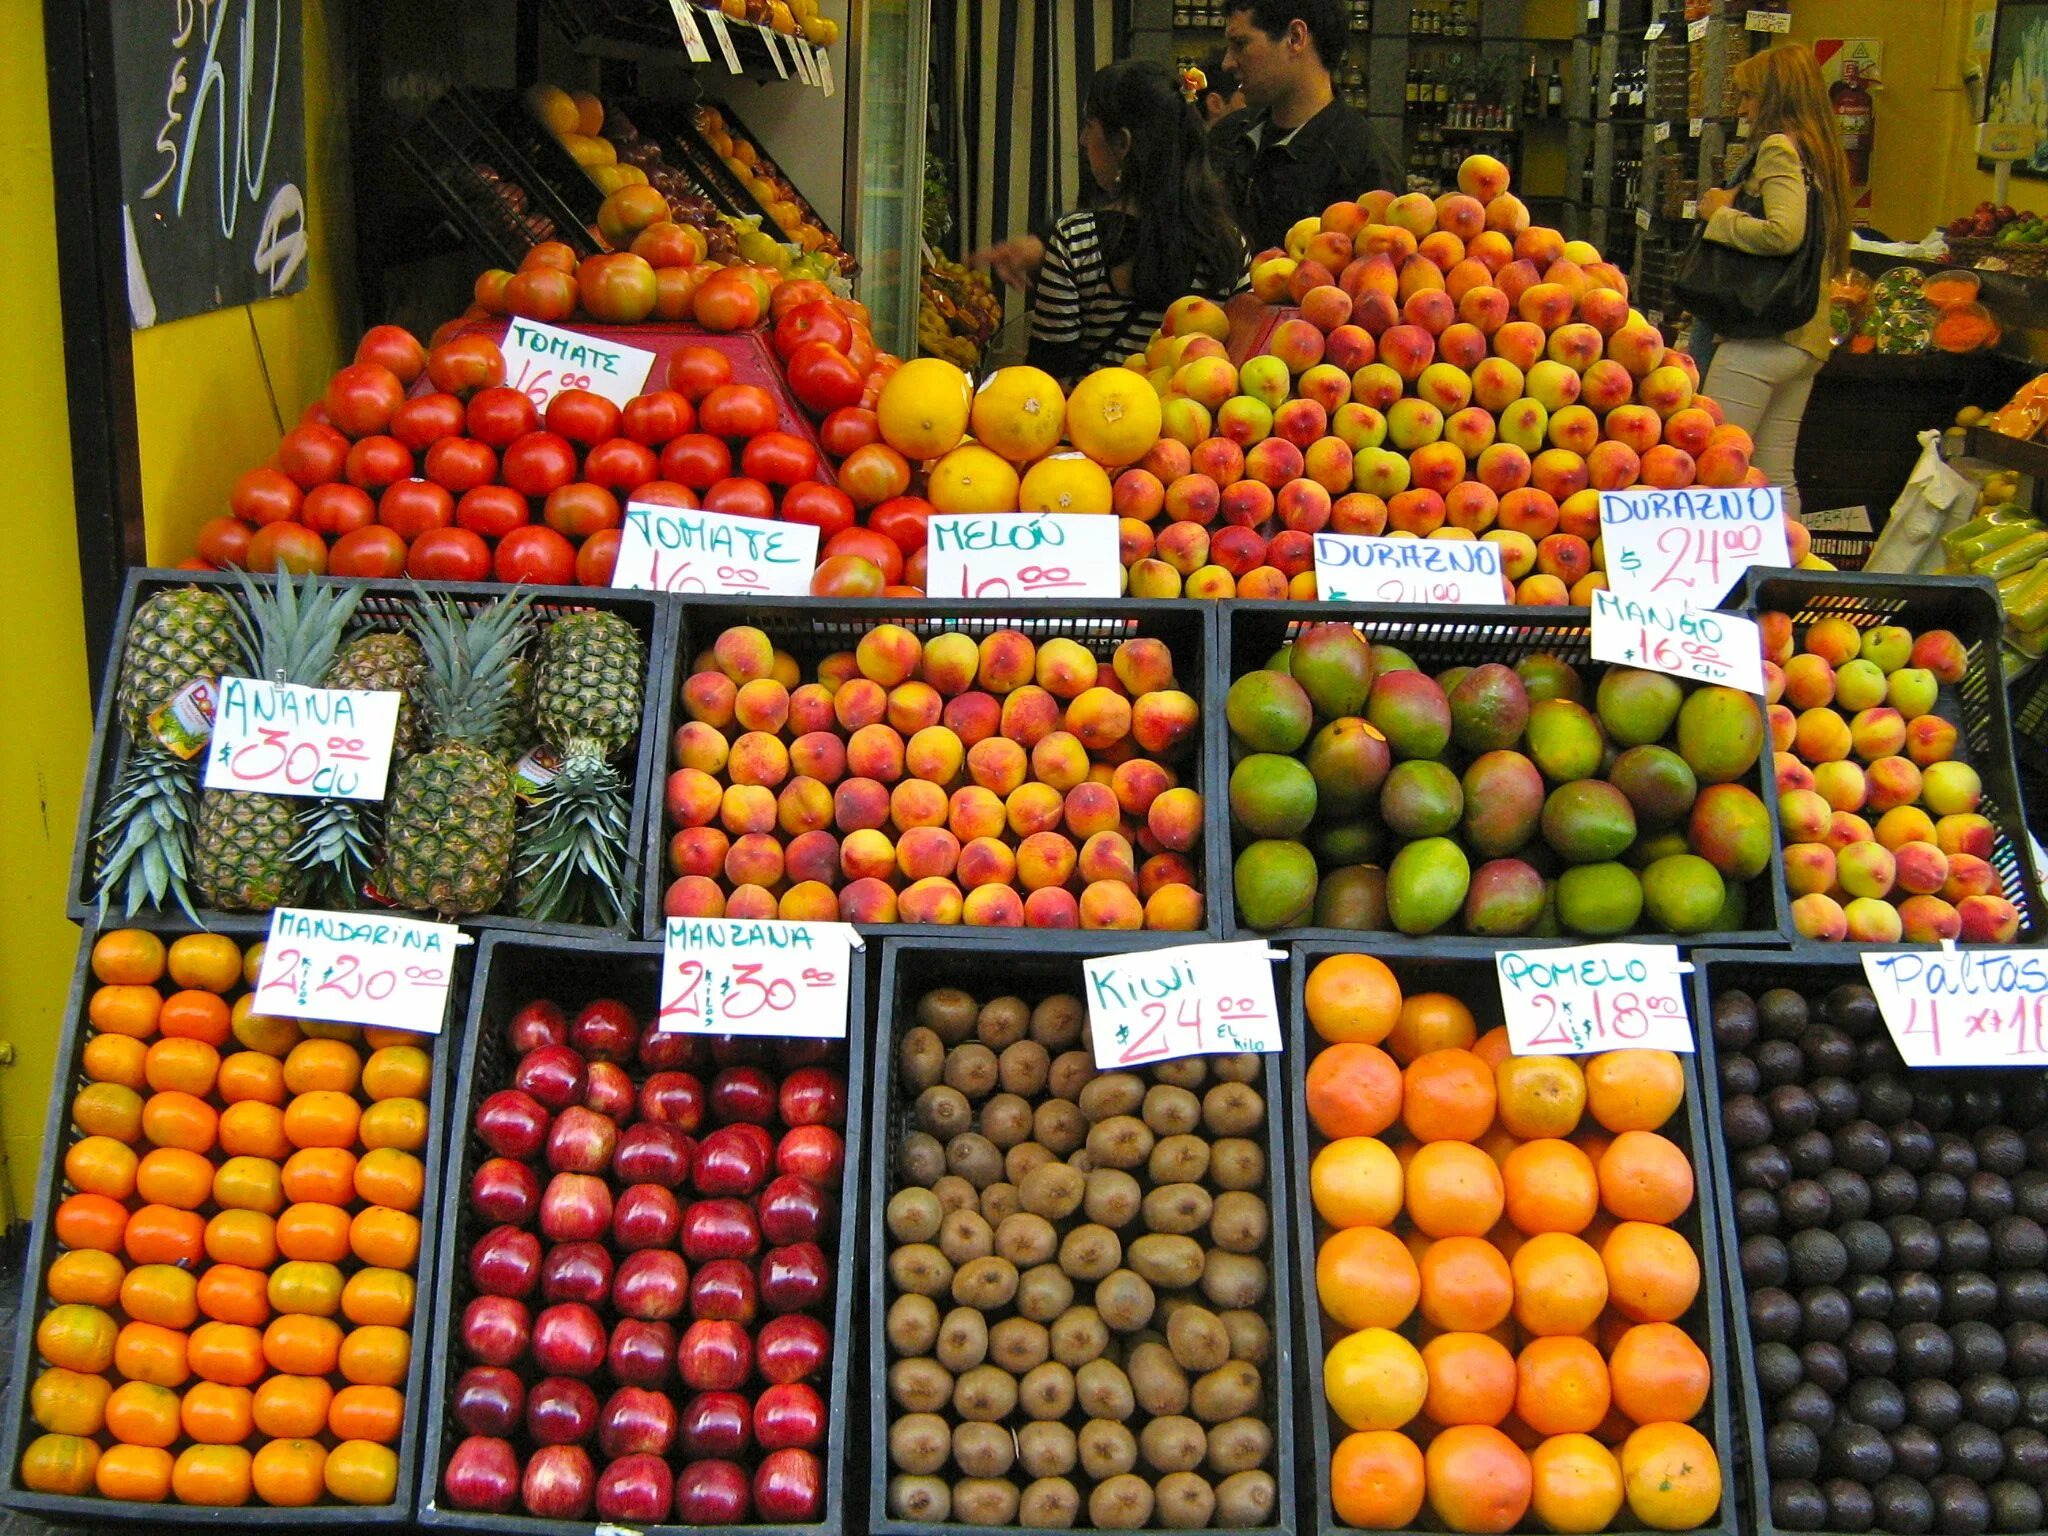 Купить магазин фруктов. Выкладка овощей и фруктов в магазине. Выкладка фруктов. Выкладка фруктов в магазине. Прилавок с фруктами.